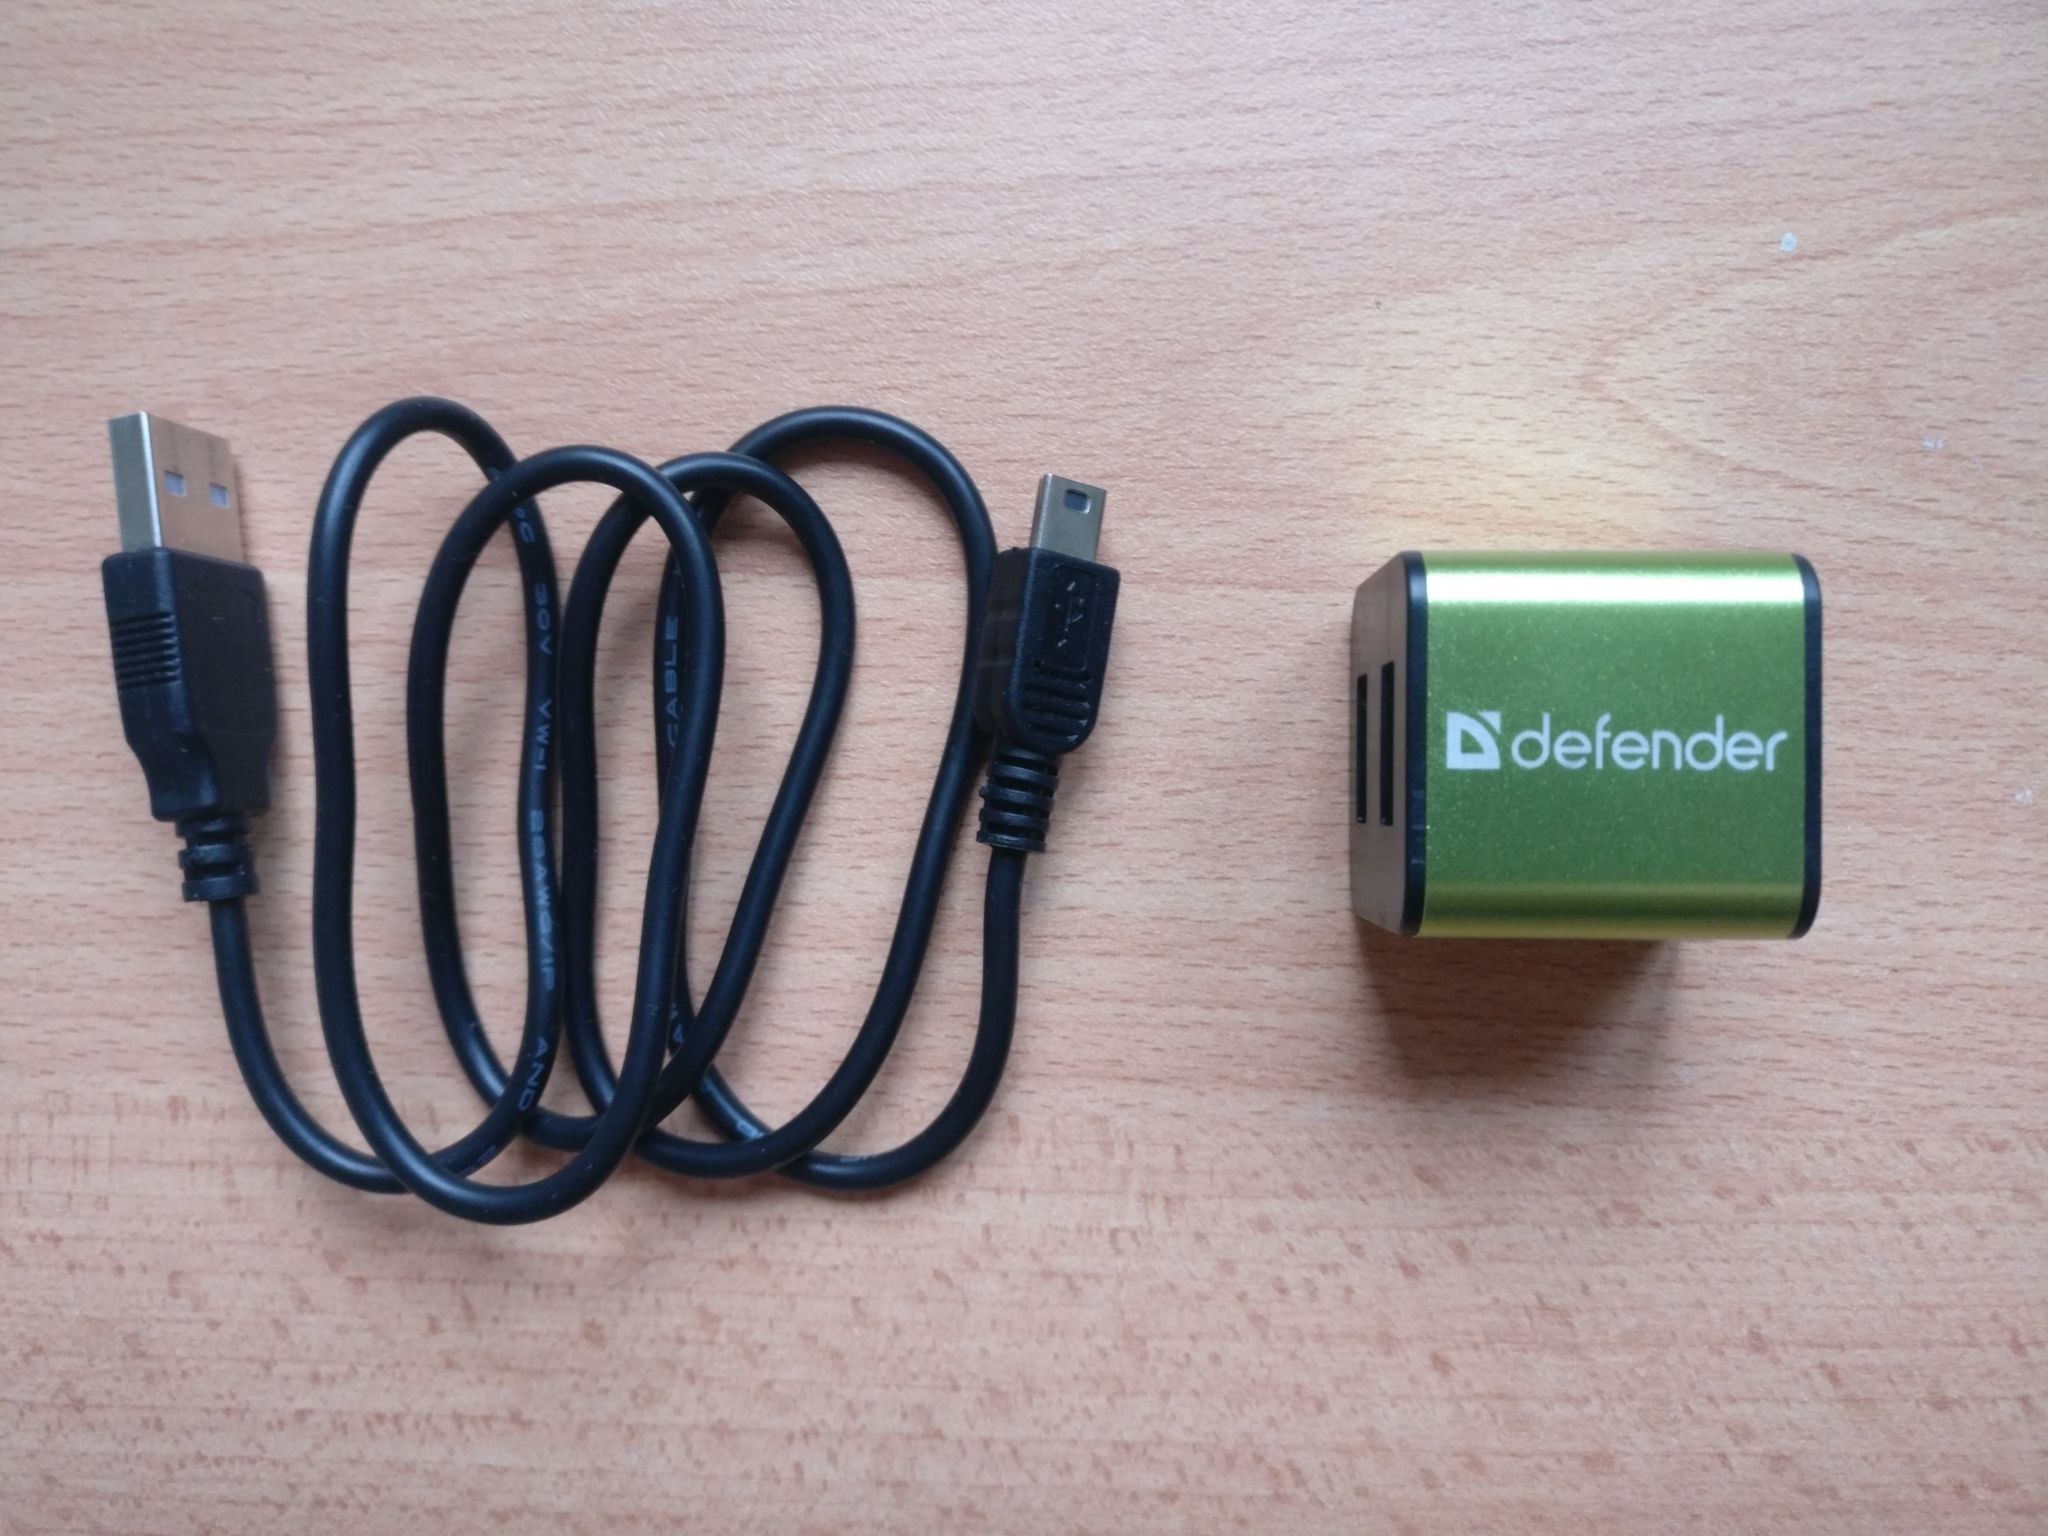 Разветвитель defender. Концентратор USB 2.0 Defender Quadro Iron. Разветвитель Defender Quadro Iron USB2.0. Разветвитель USB Defender Quadro Power (83503). USB-хаб Defender Quadro PROMT, USB 2.0, 4 порта.